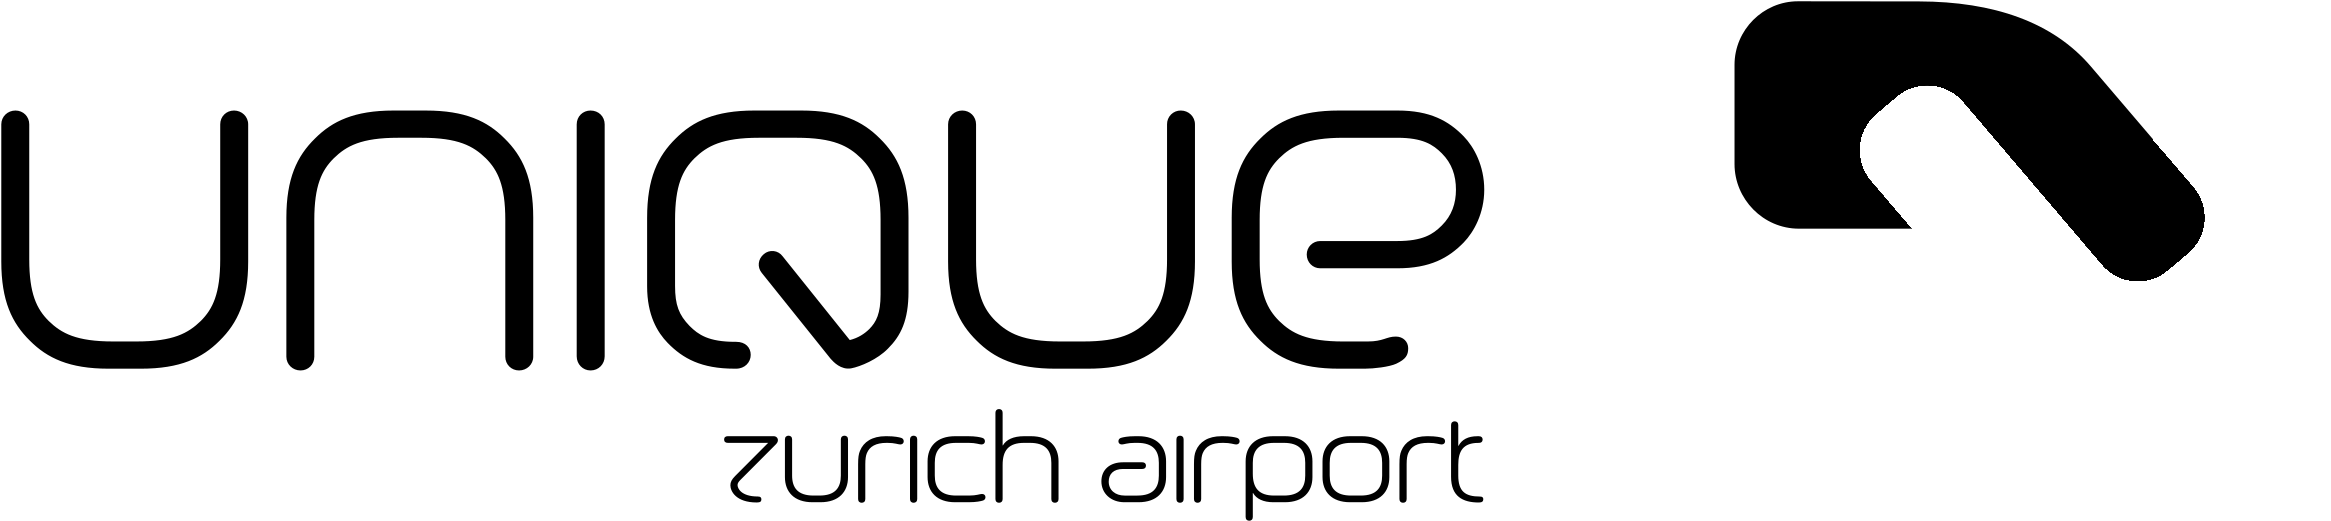 Unique Logo Black And White - Unique (2400x2400), Png Download